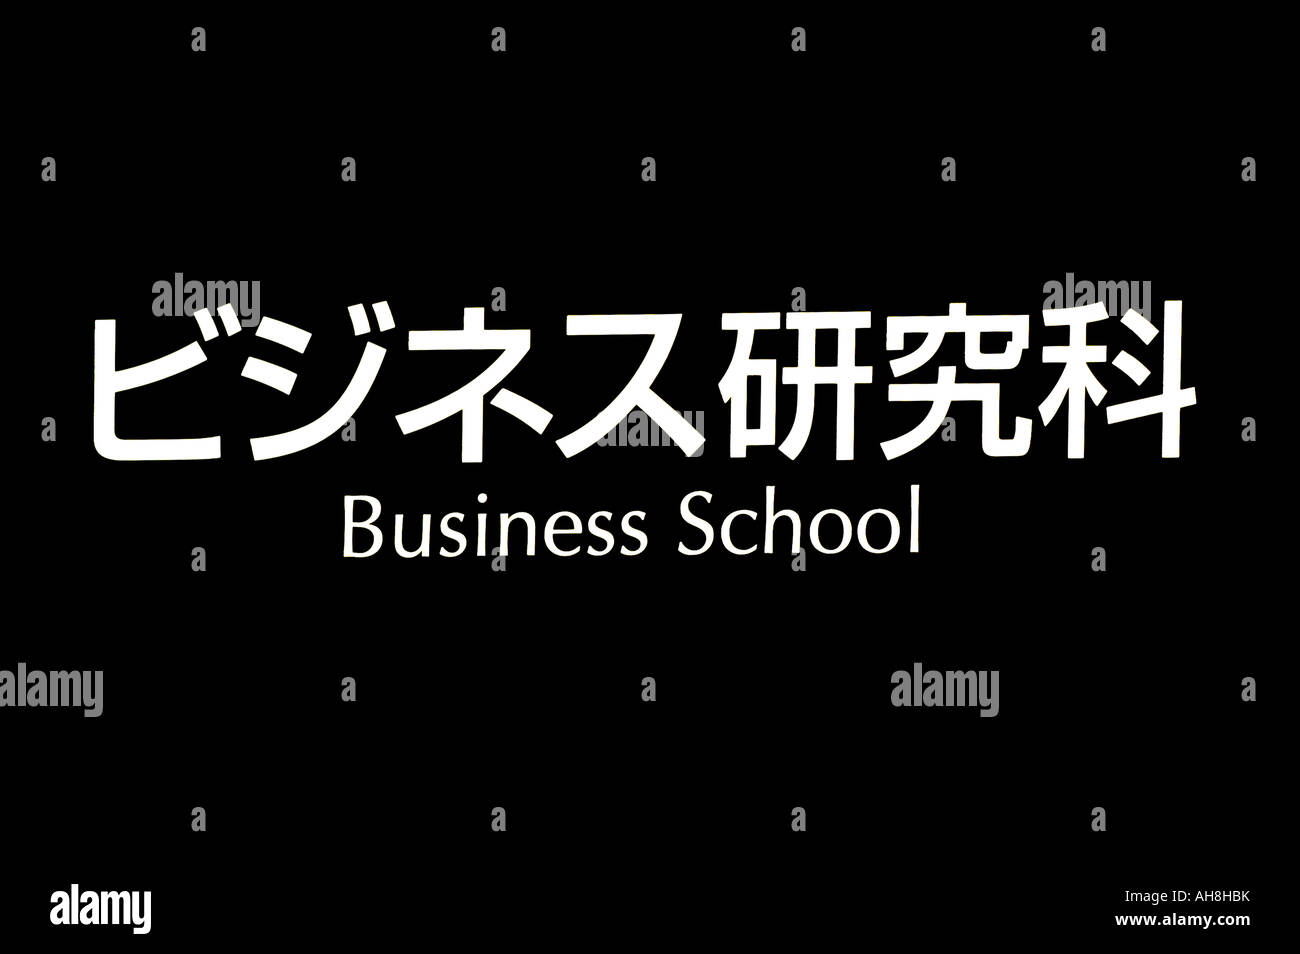 Business School Tokyo Japan japanische Asia Kyoto Asien Fernost Innenstadt Stadt zentralen Städten Hauptstadt Reise Tourismus Stockfoto